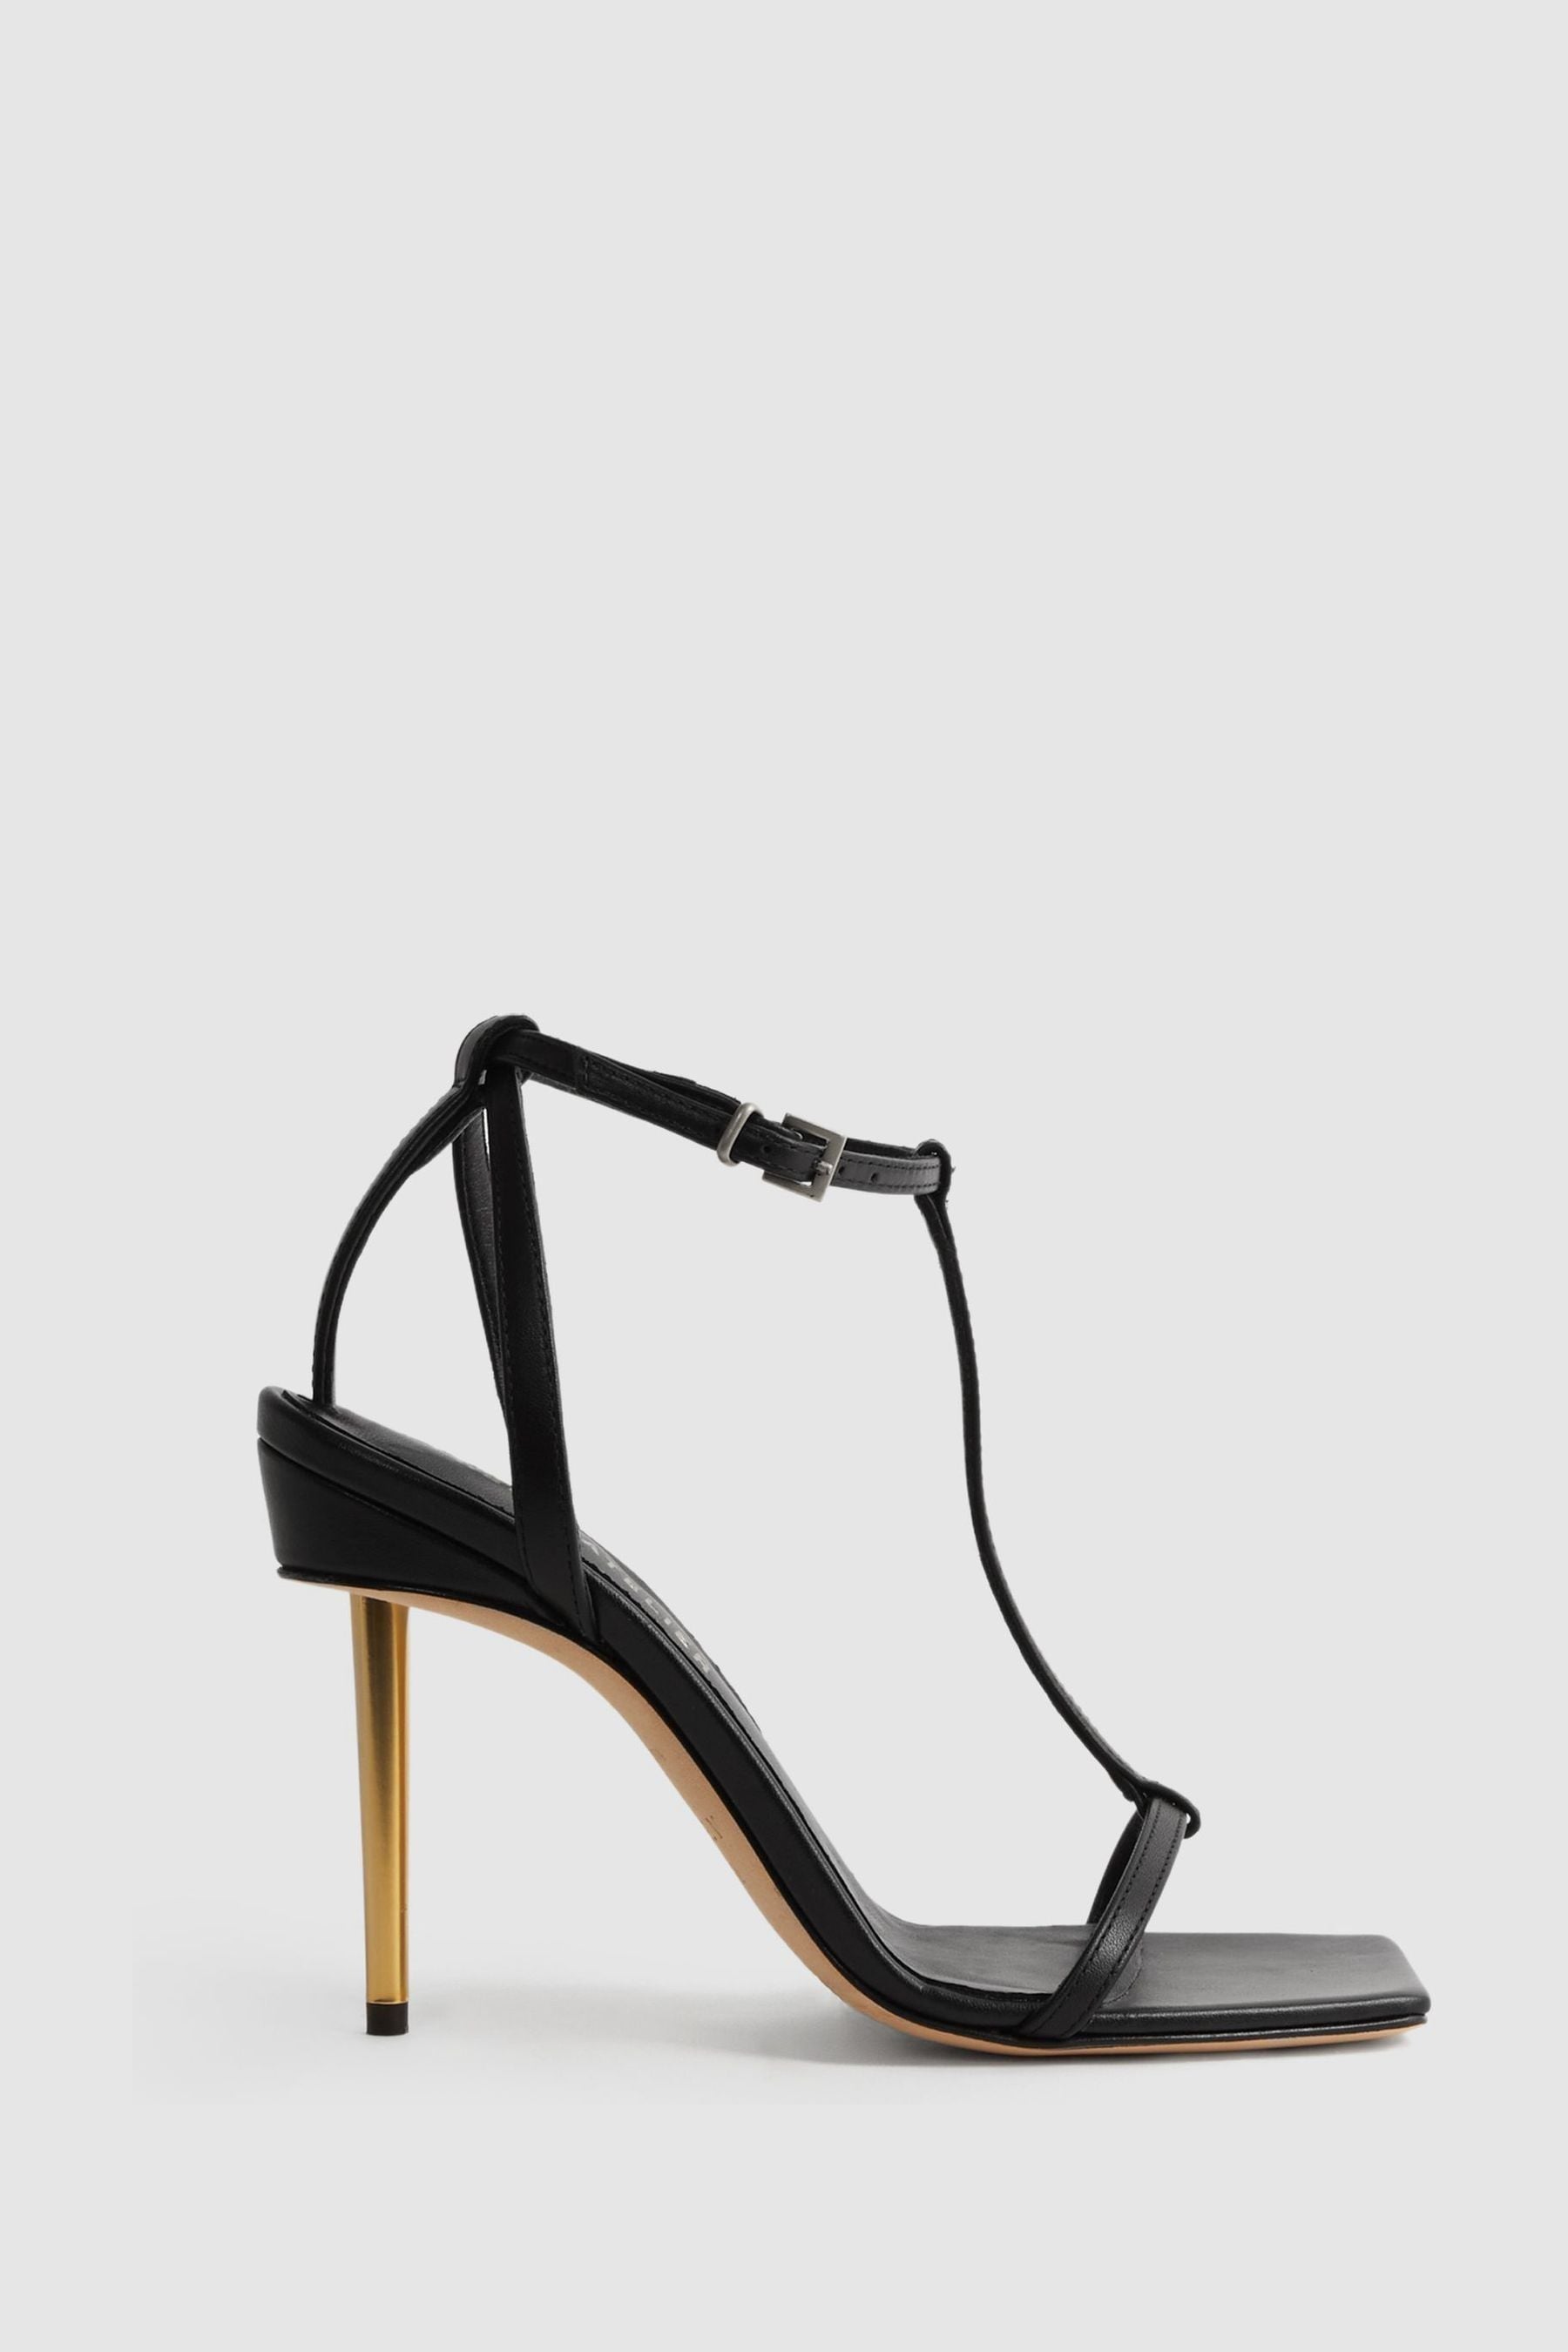 Reiss Sophia - Black Atelier Italian Leather Strappy Heels, Uk 6 Eu 39